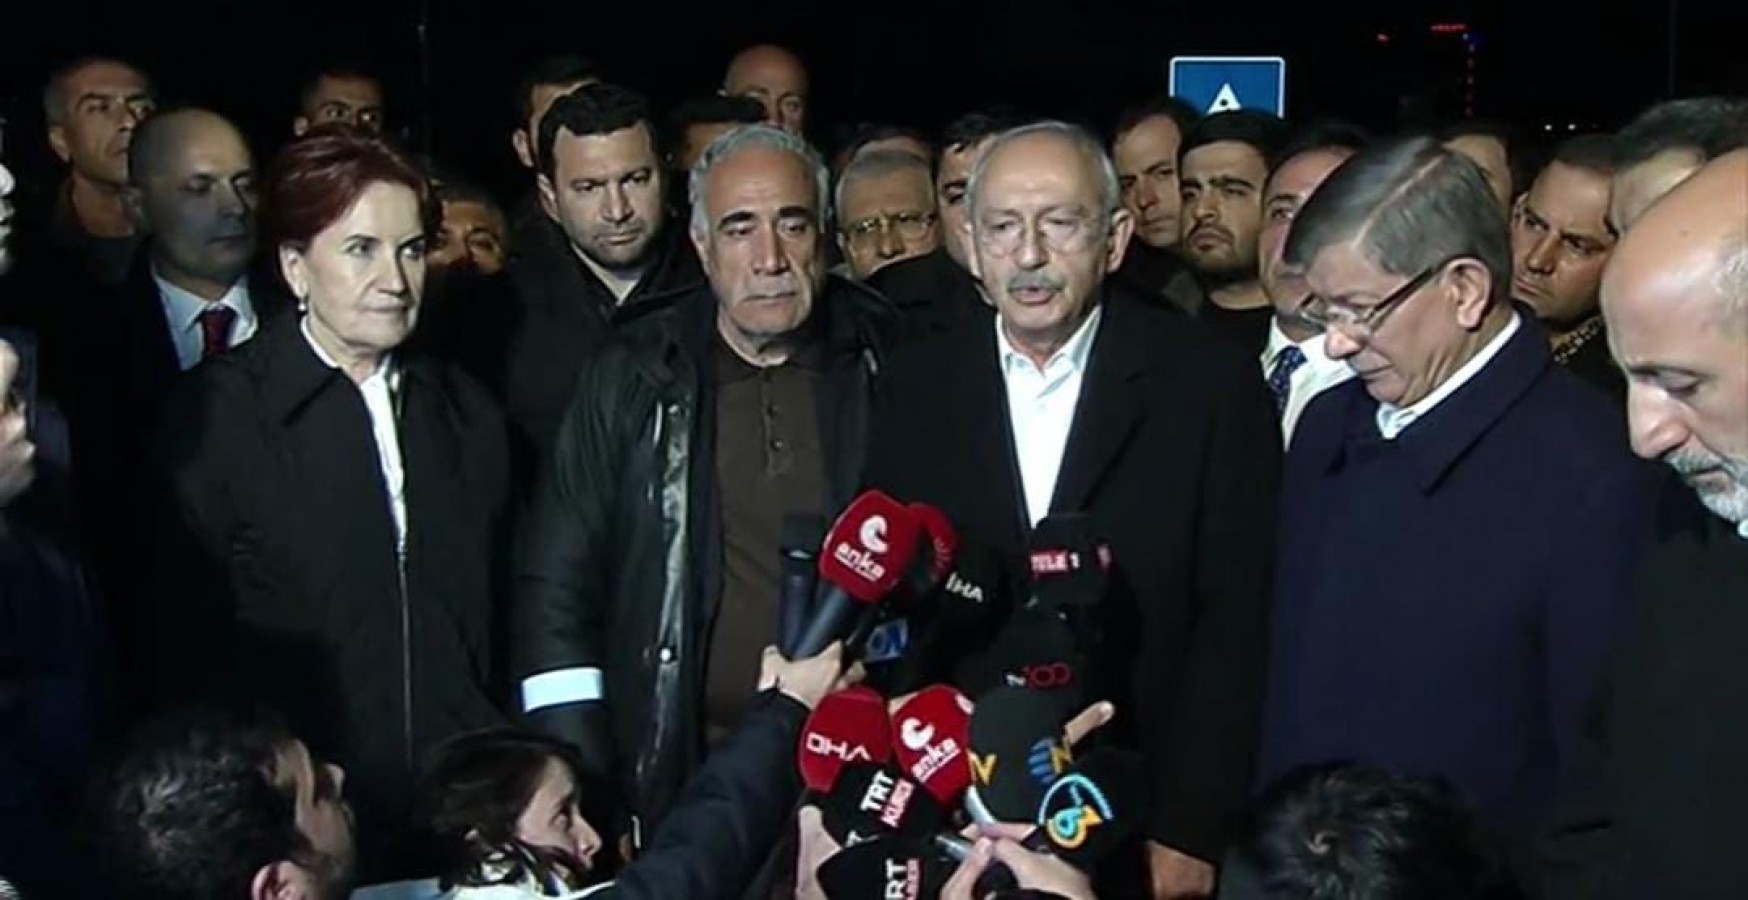 Millet İttifakı'nın 3 lideri Şanlıurfa'da! "Kimse umutsuz hissetmesin!";